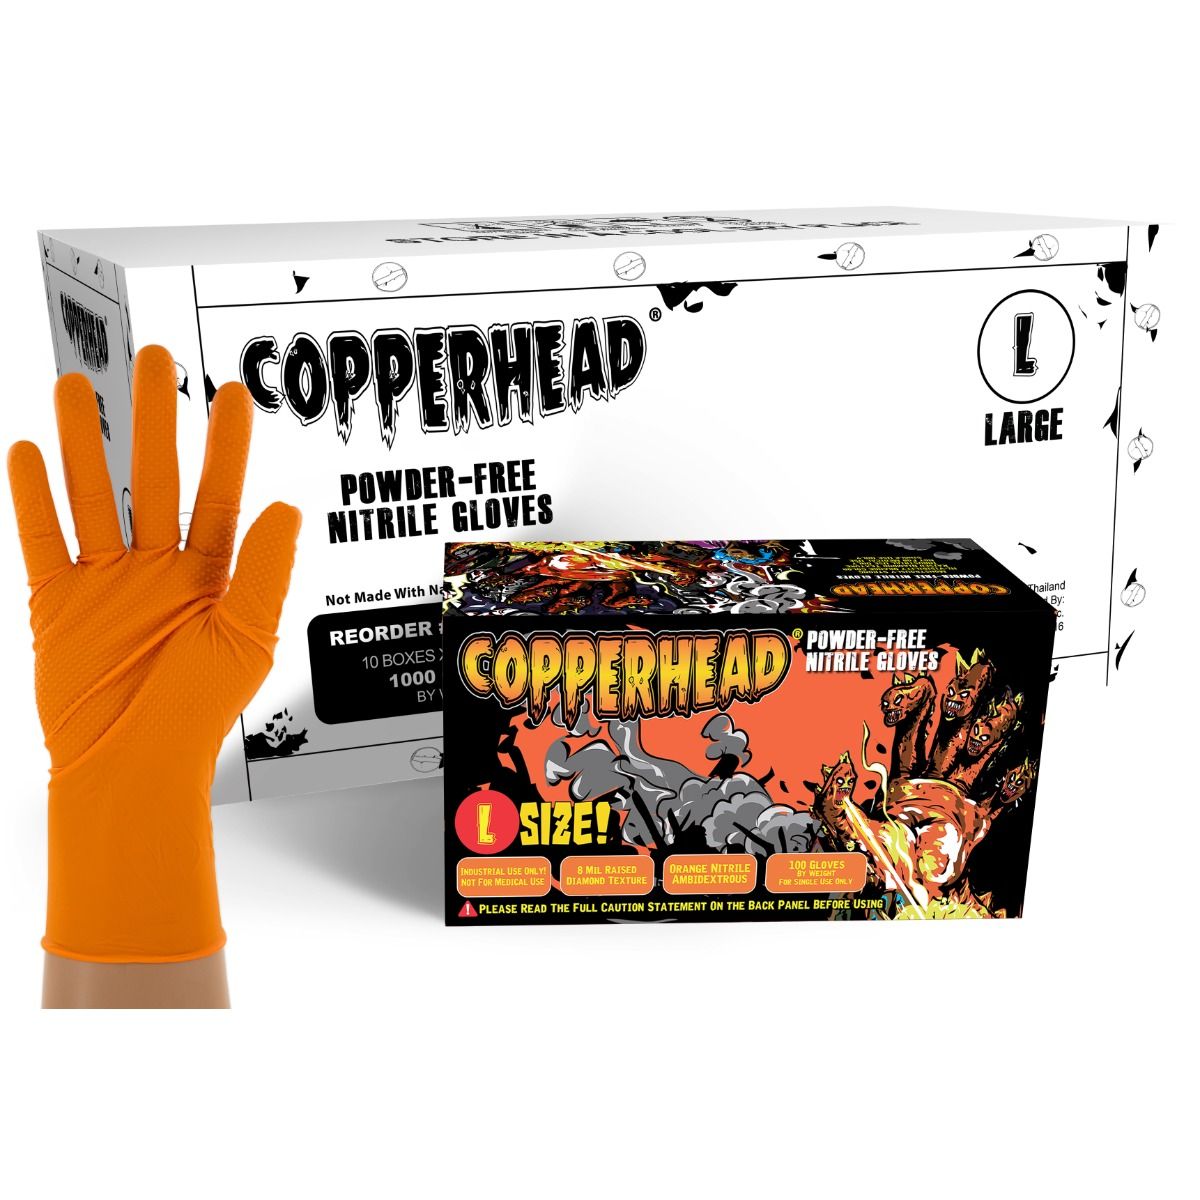 Outrageous Orange Diamond Grip Nitrile Gloves